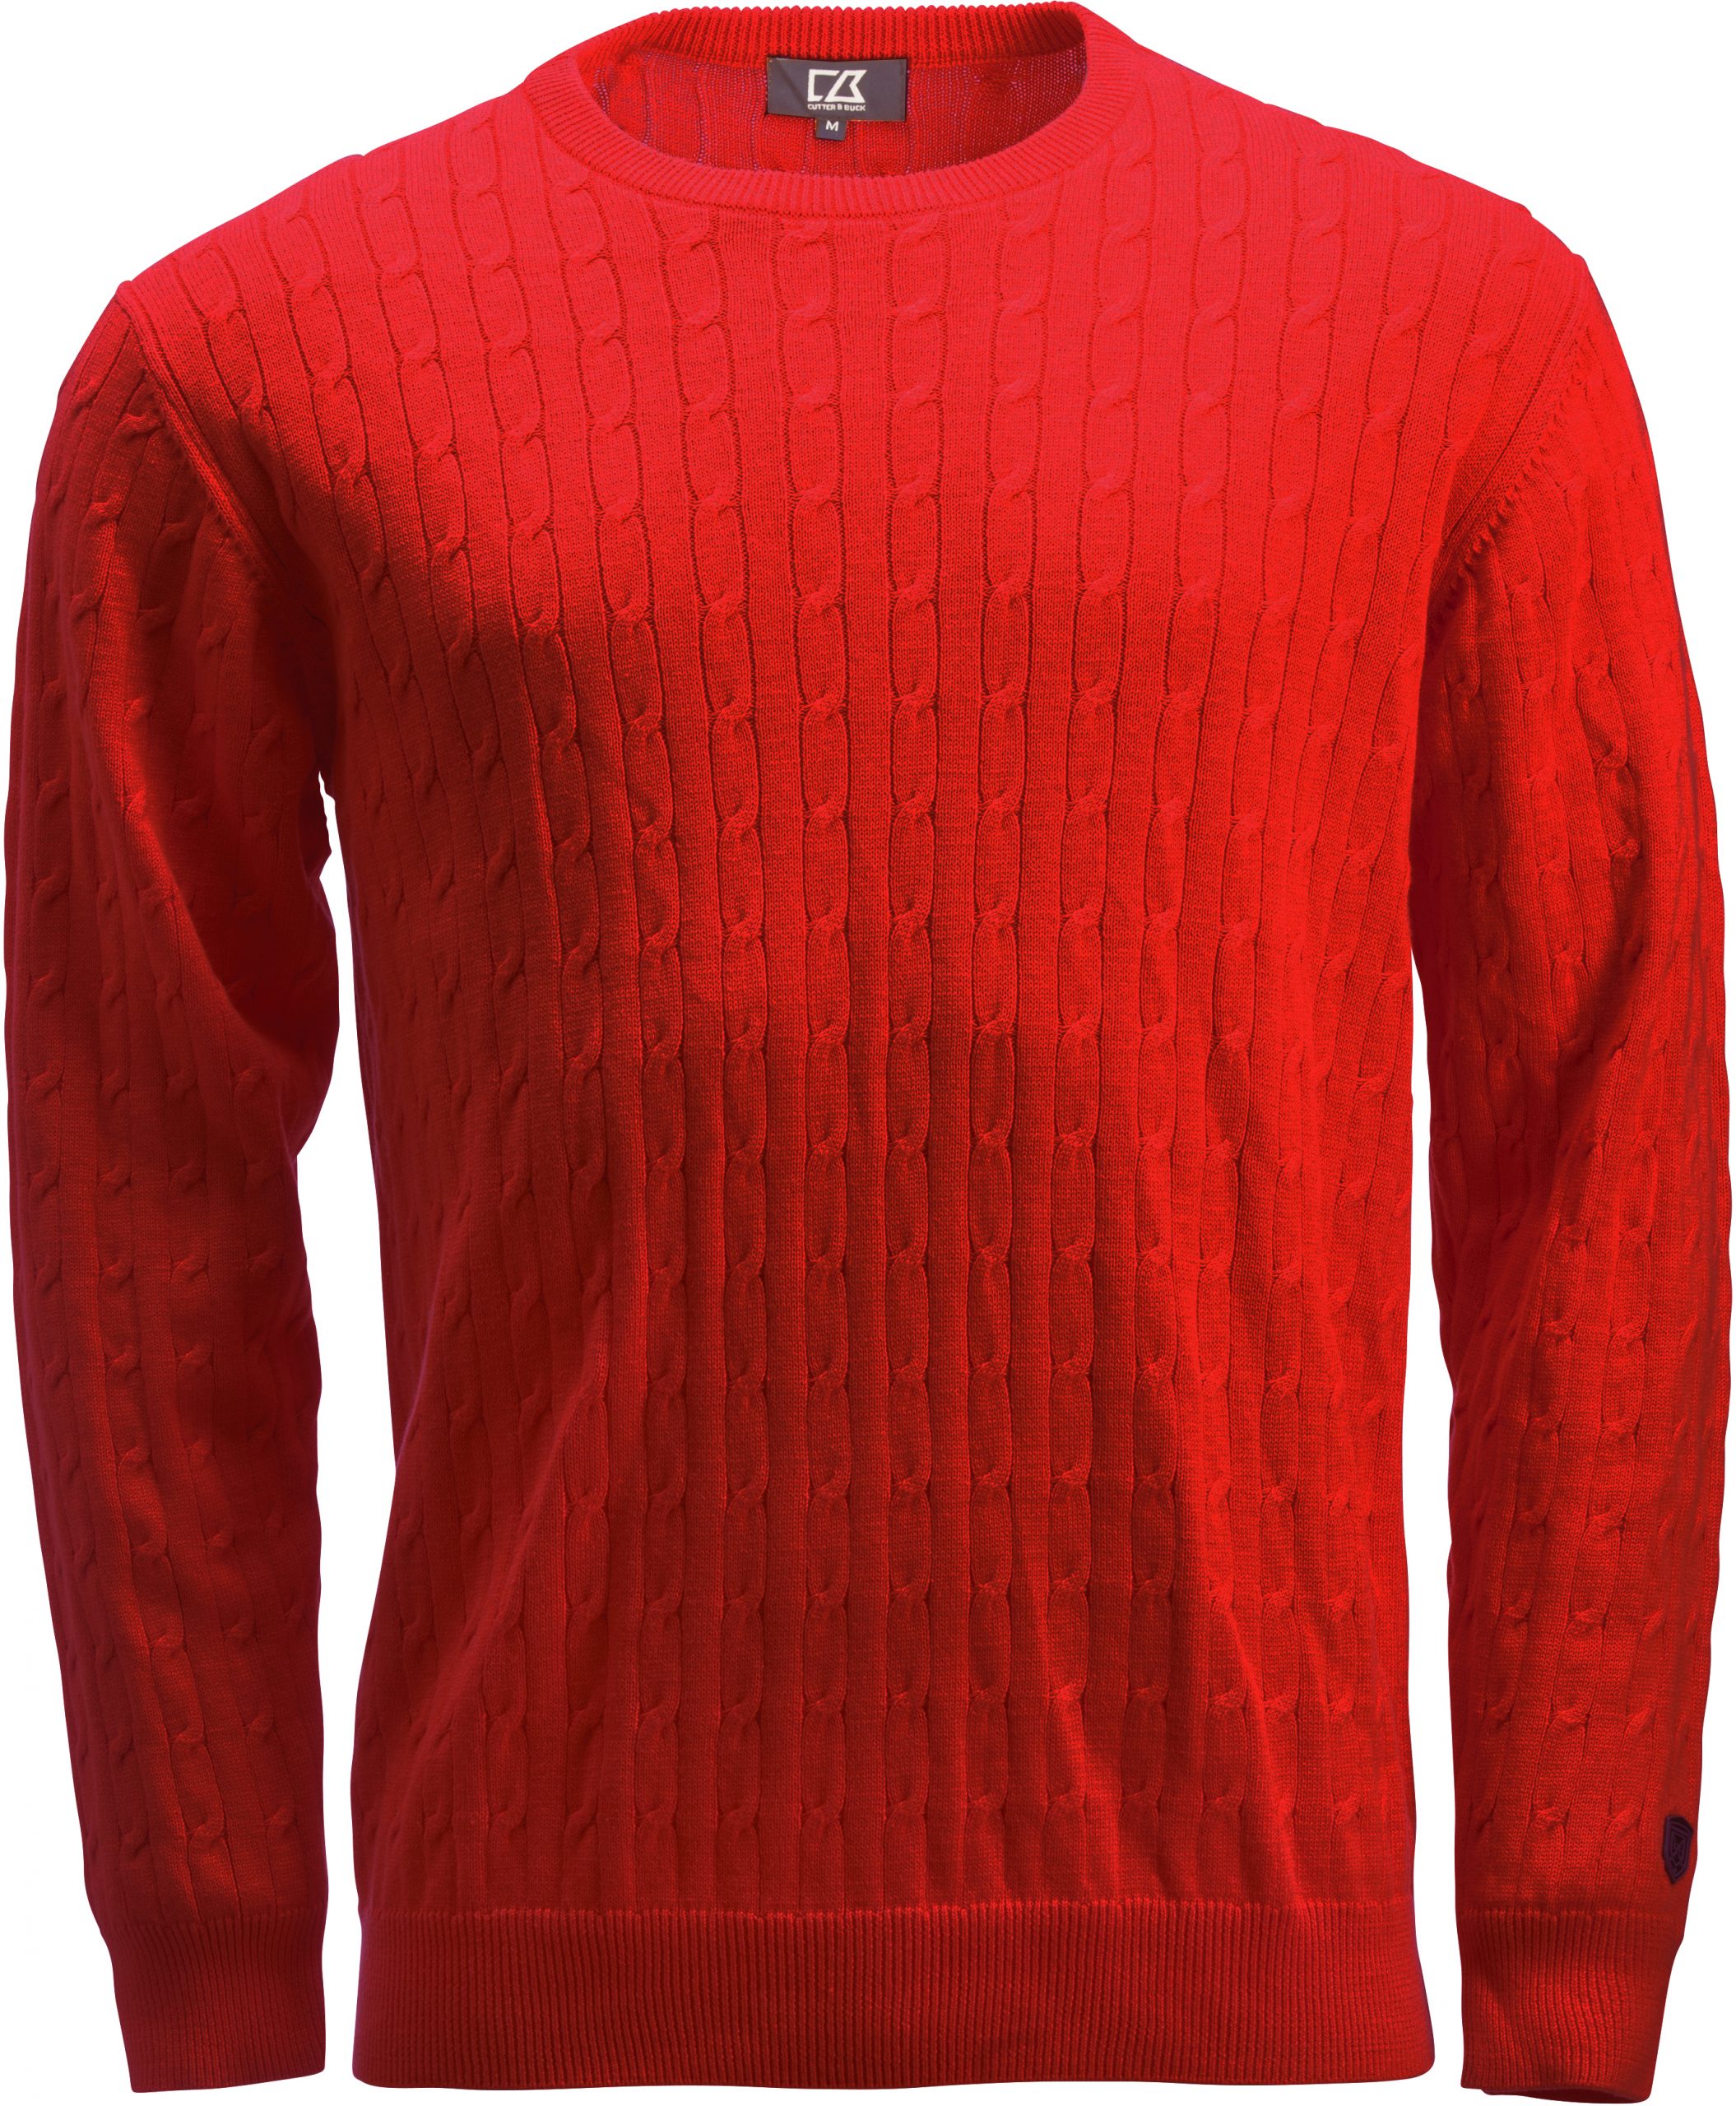 Cutterandbuck Blakely Knitted Sweater Men's Punainen